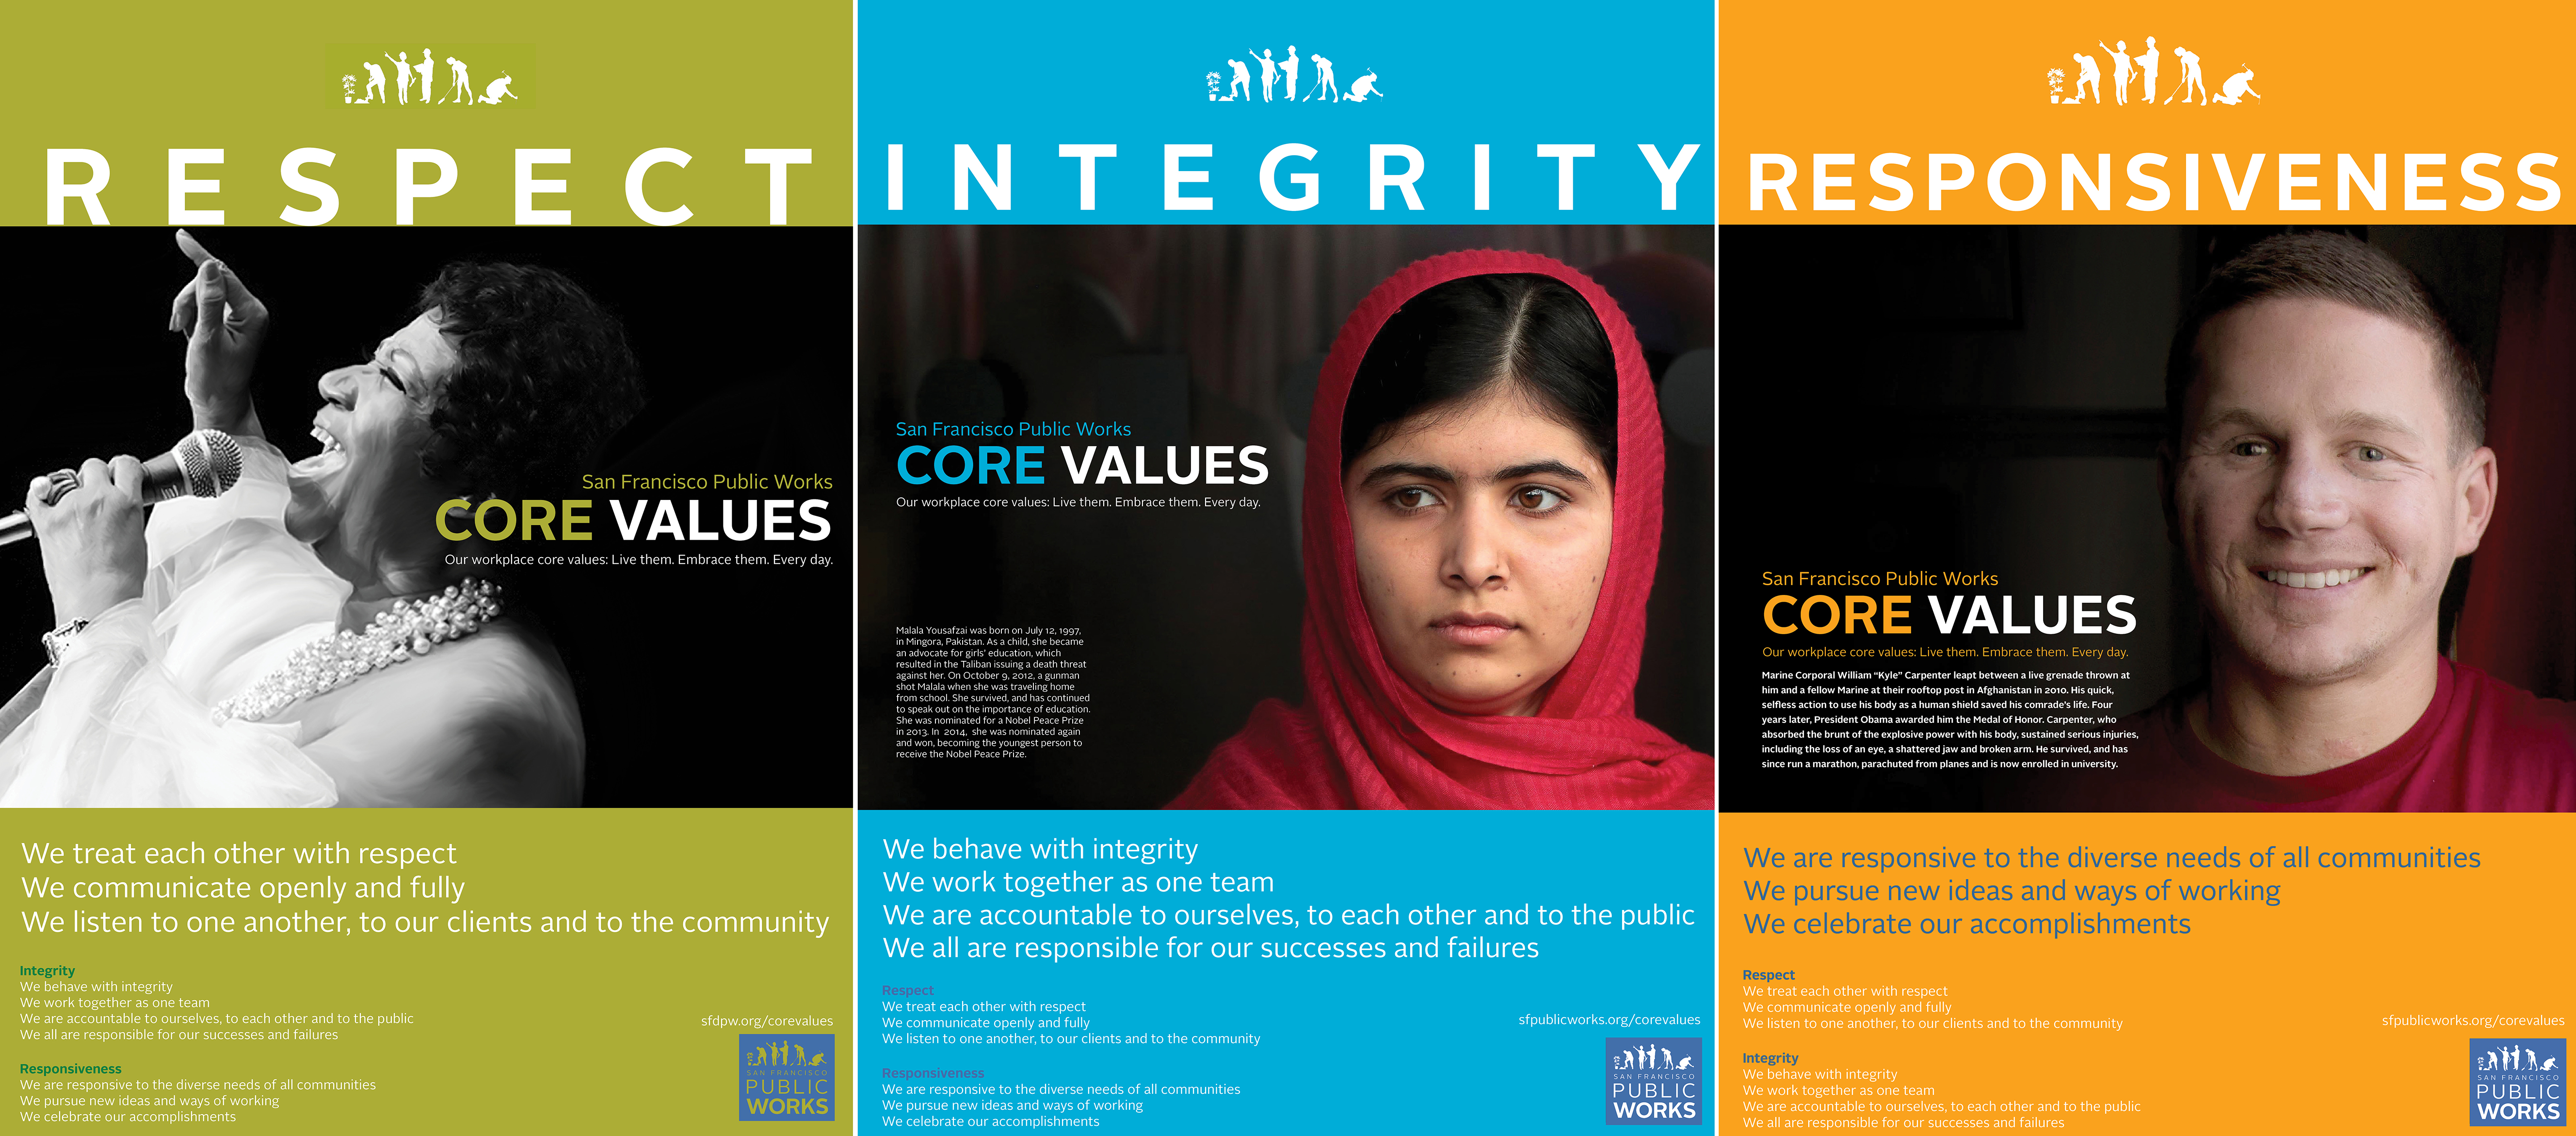 The Public Works core values